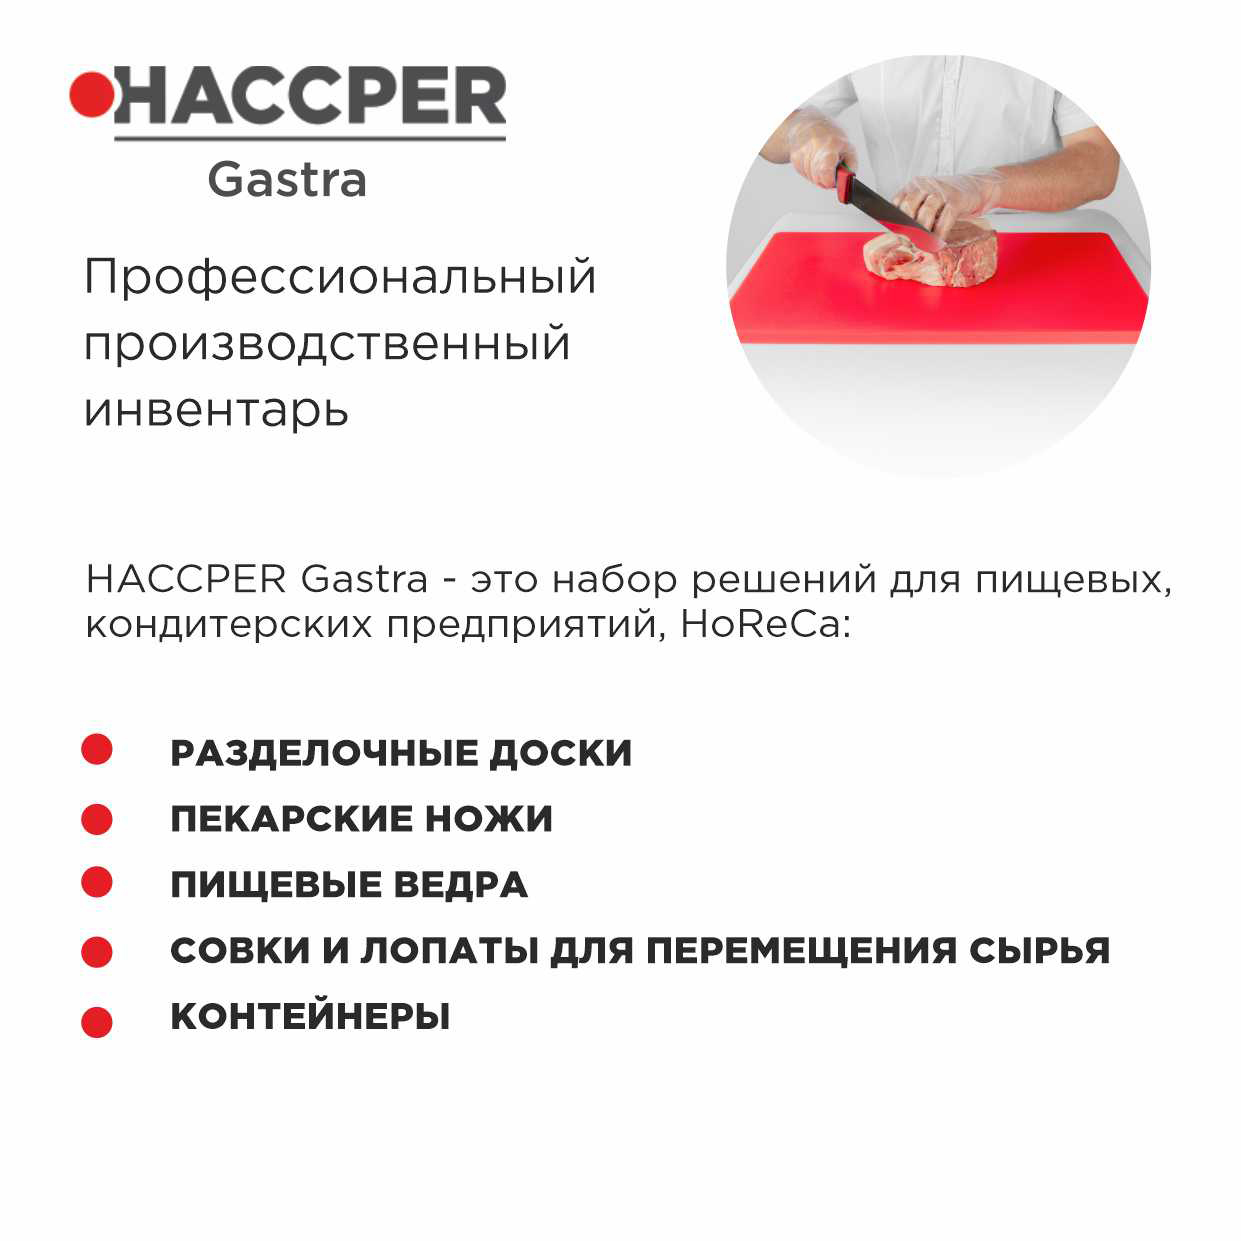 Профессиональная разделочная доска  HACCPER Gastra, красная